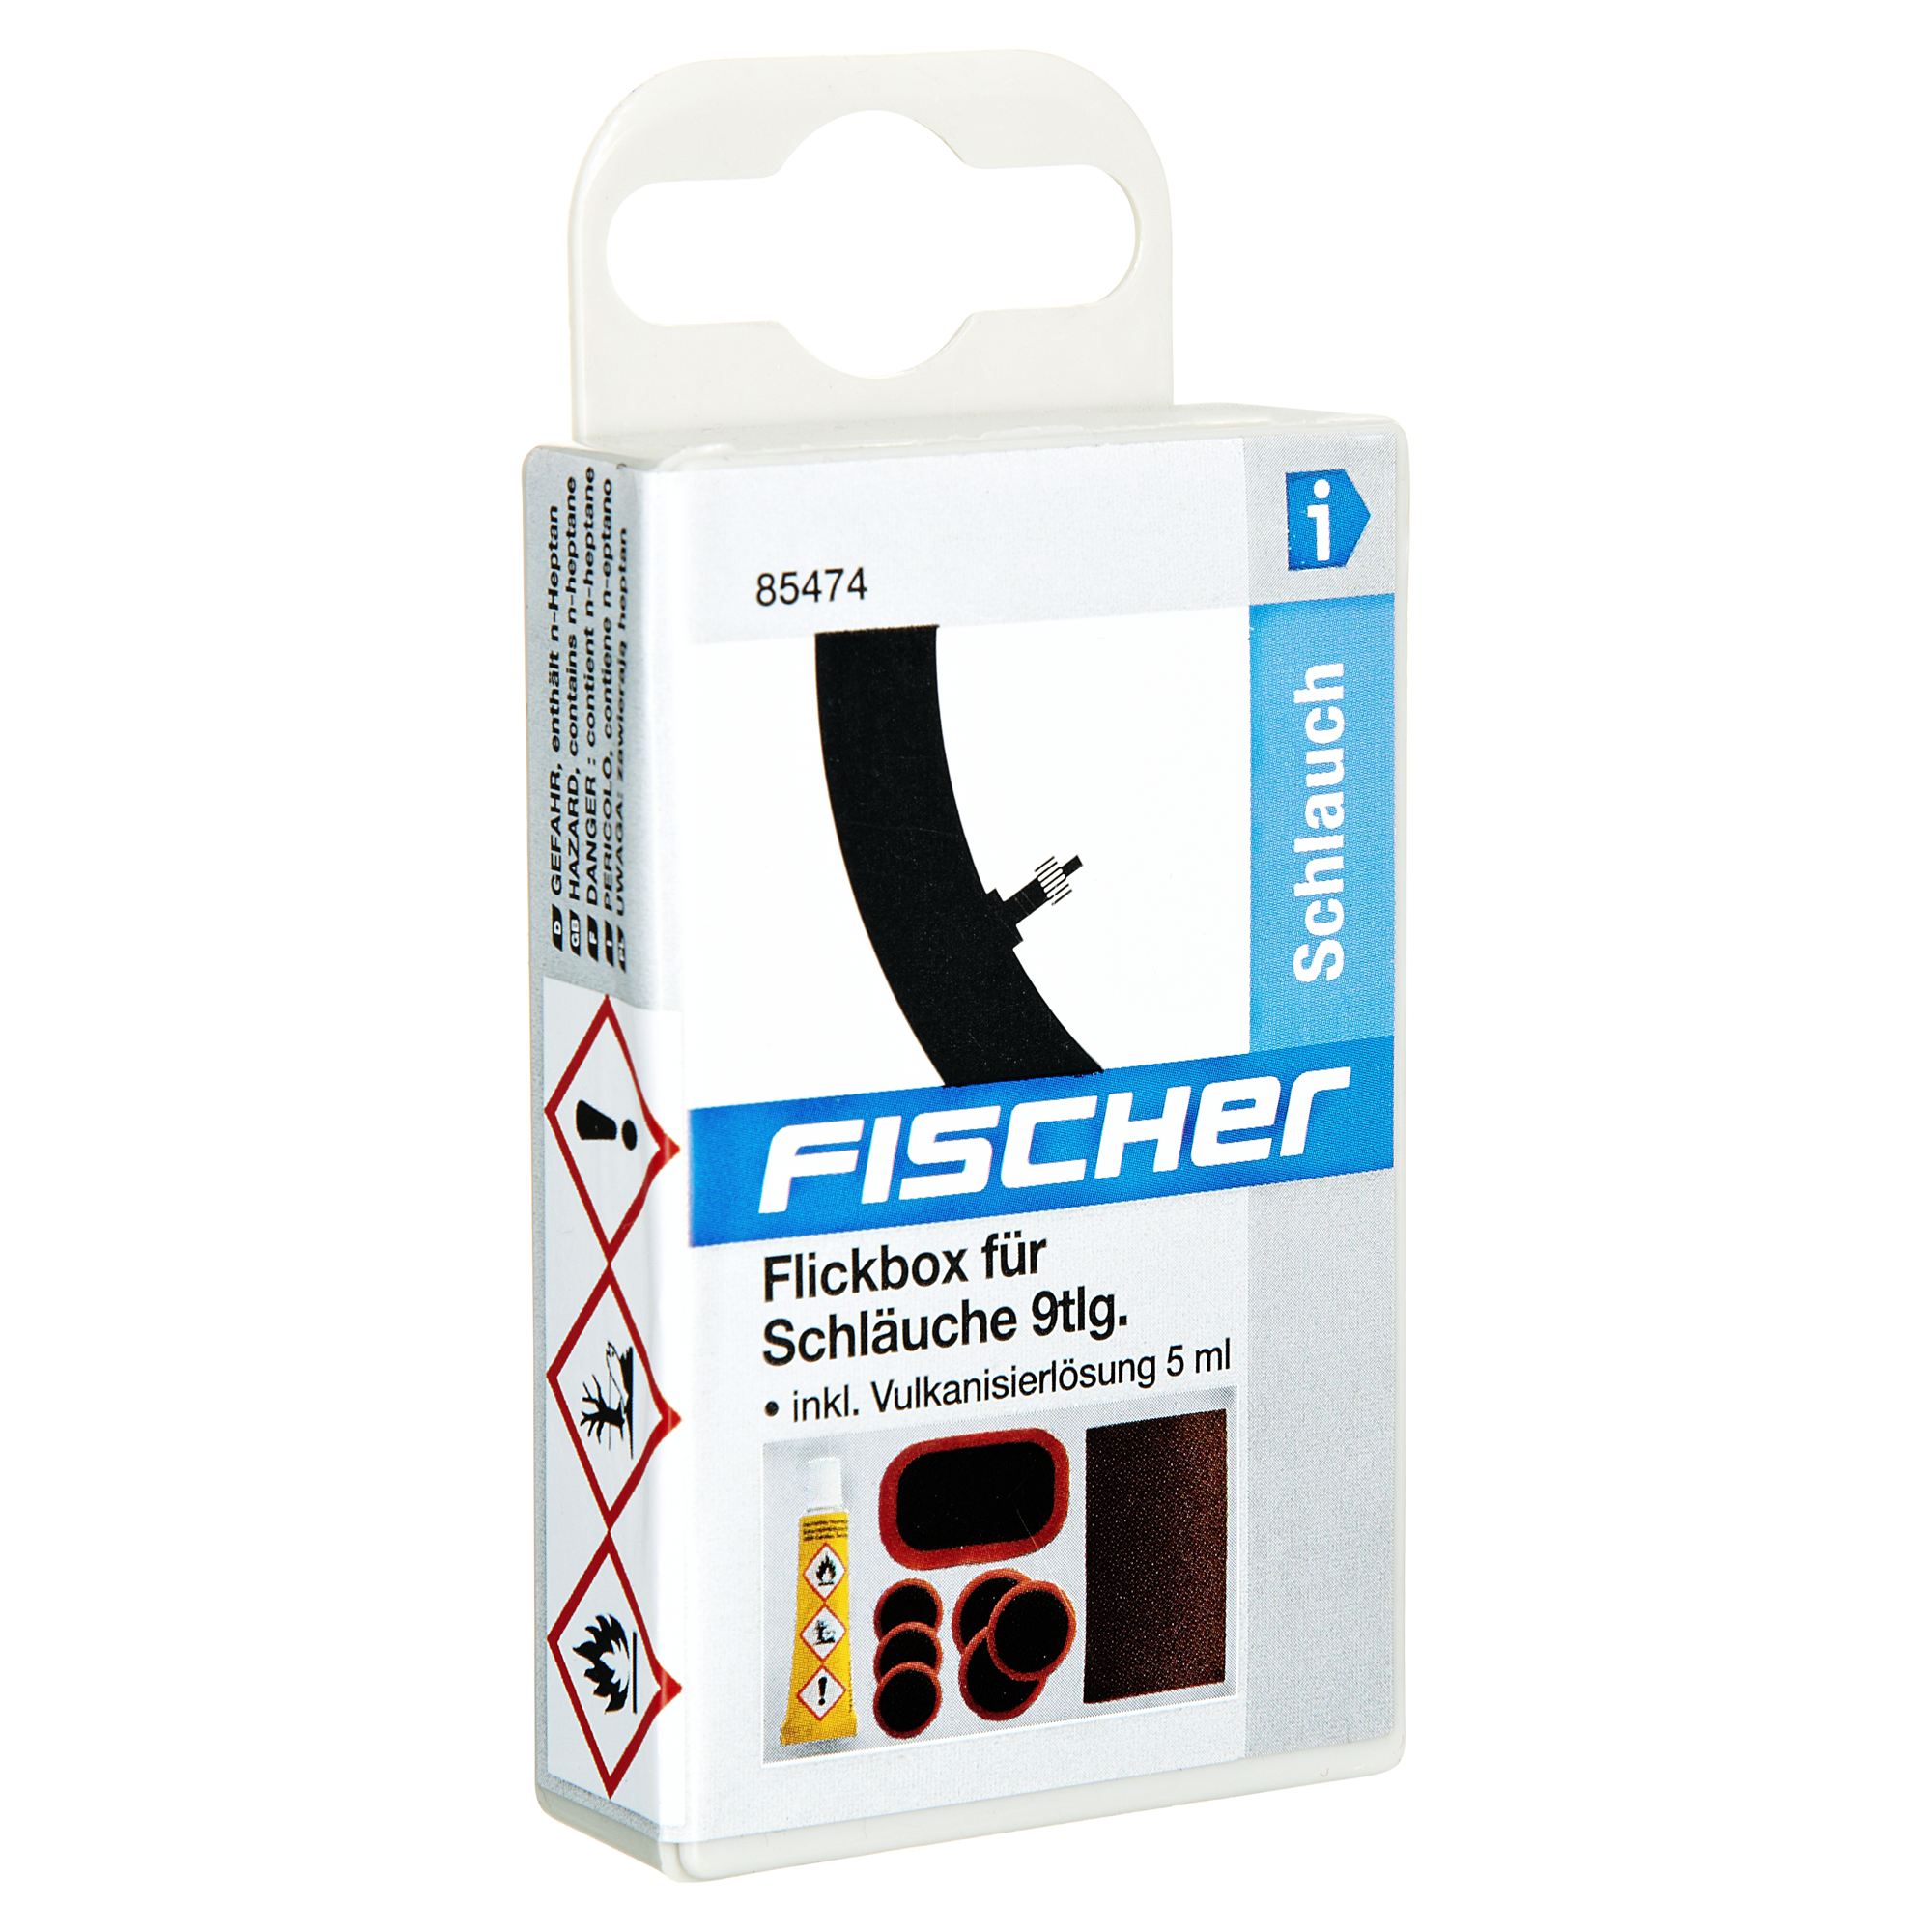 Fischer Flickbox für Fahrradschläuche 9-tlg. + product picture